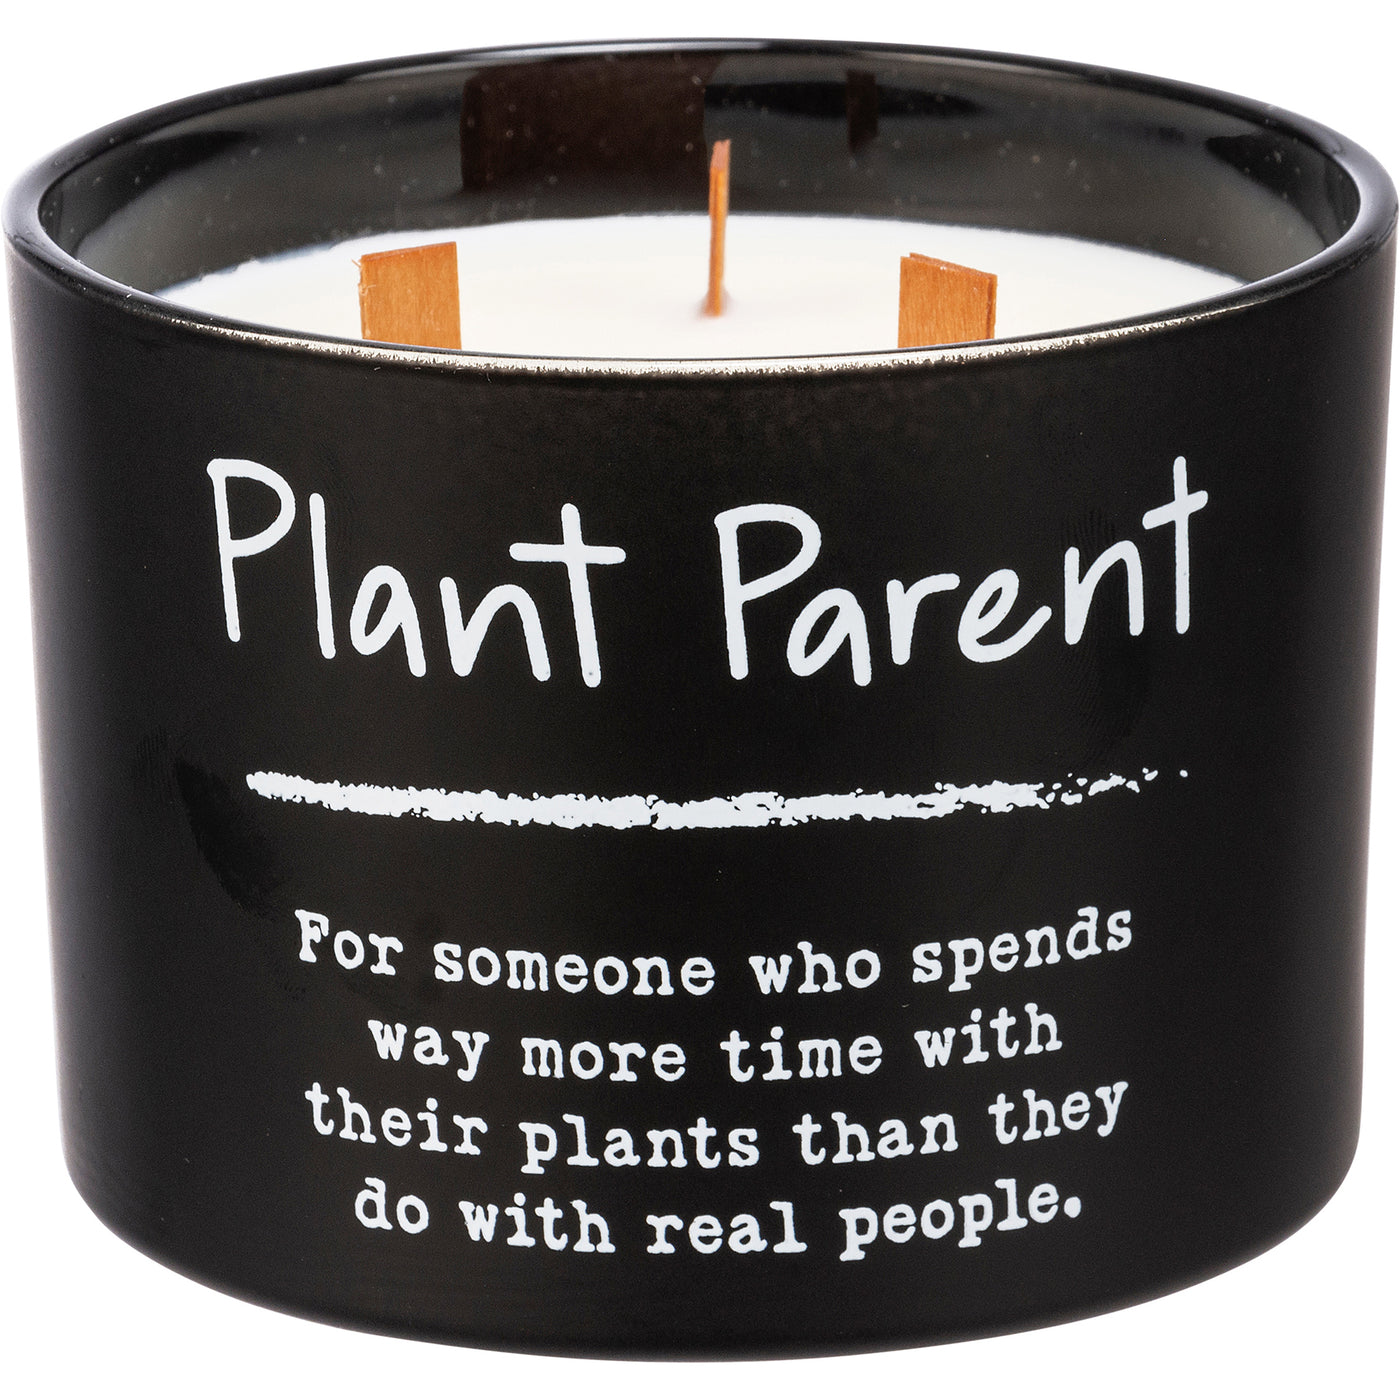 Plant Parent 14 oz Wood Wick Jar Candle